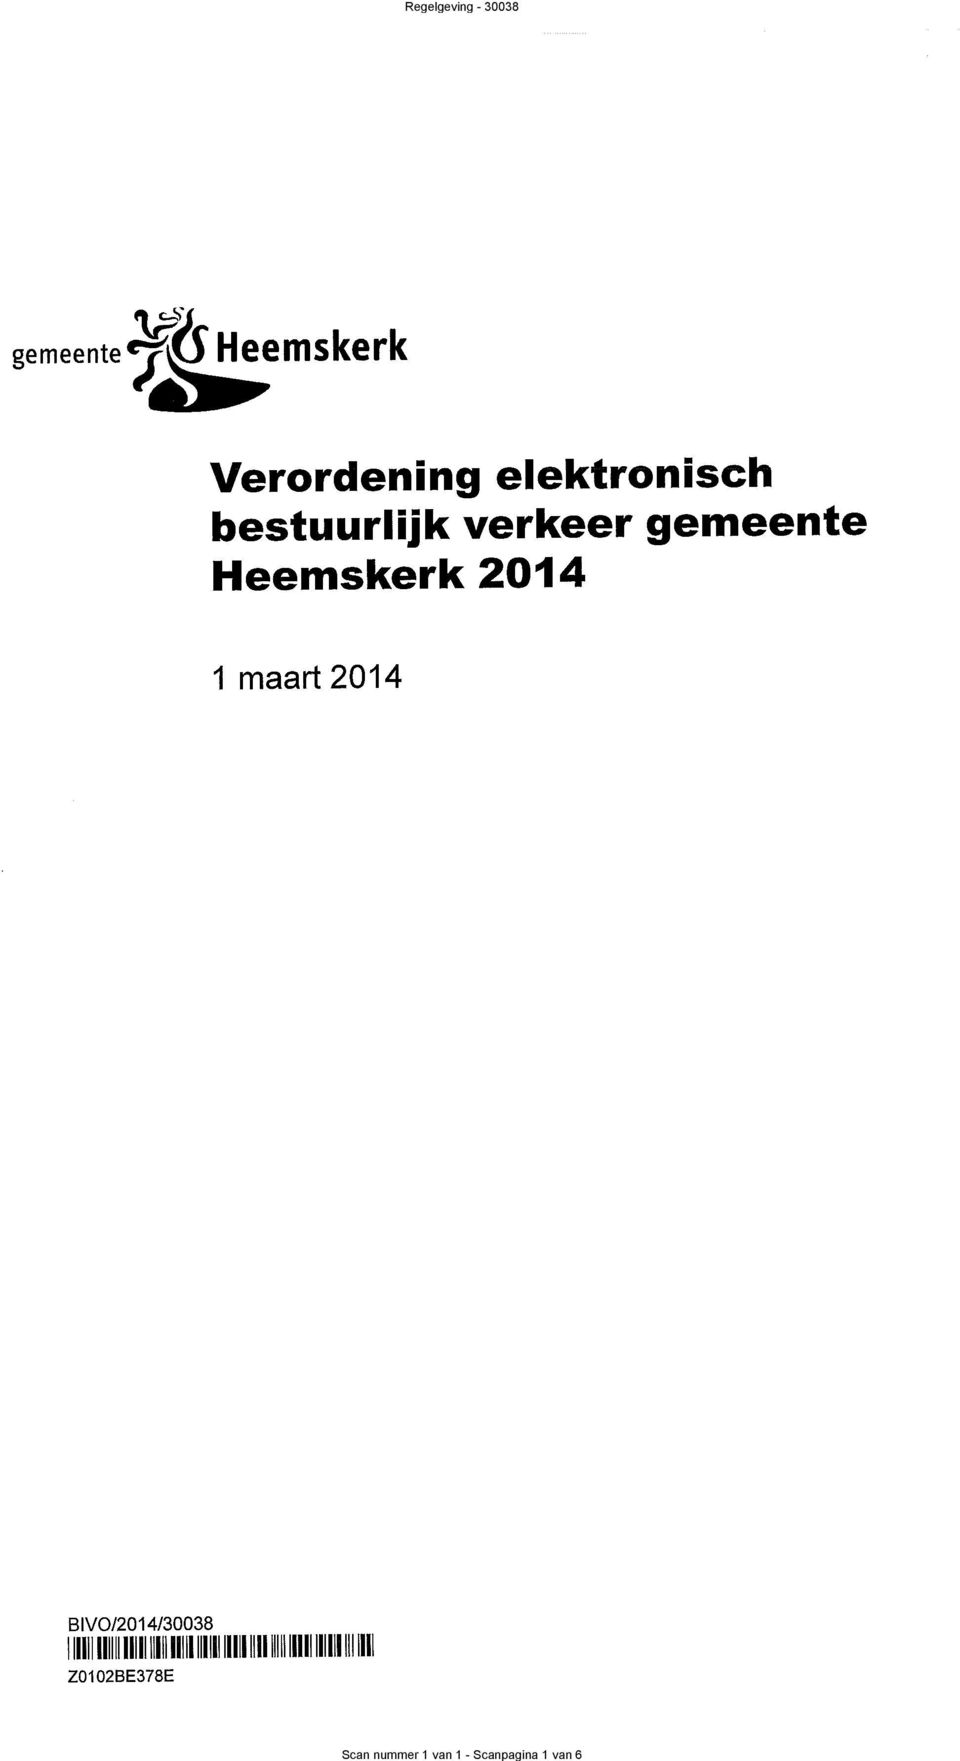 elektronisch Heemskerk 20 1 maad 201 81V0/201/008 111111